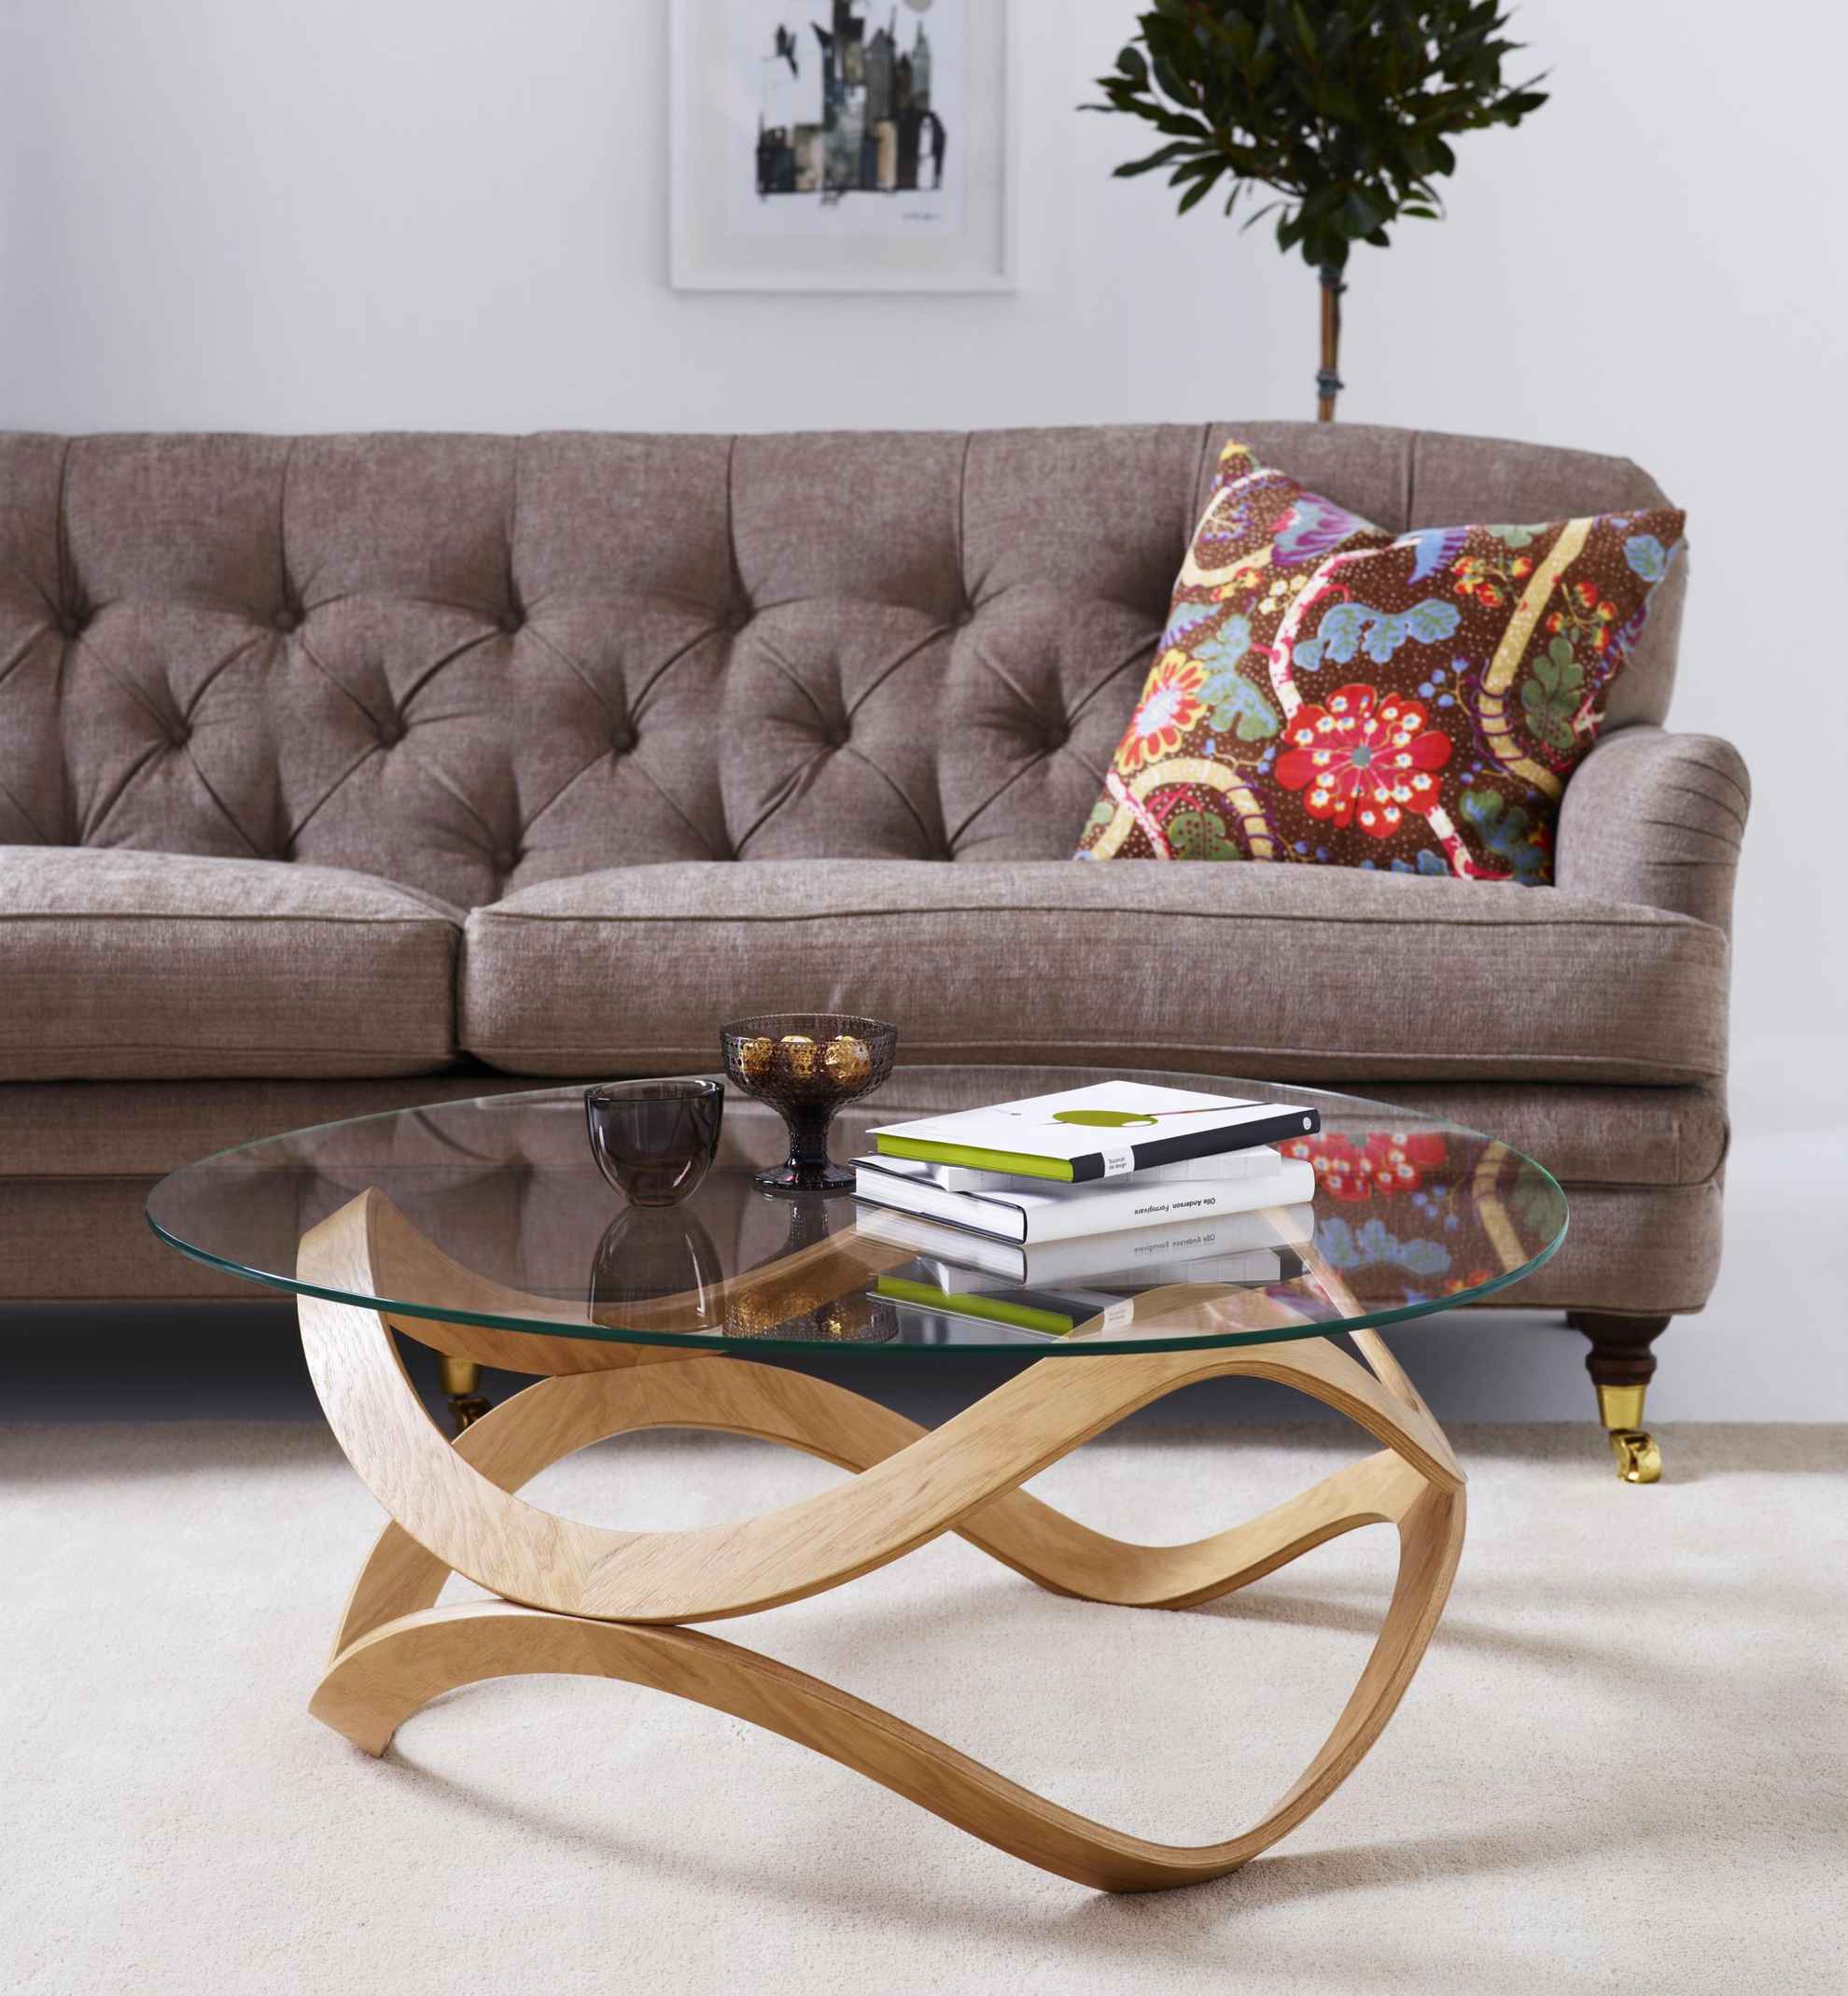 Ein rund gestalteter Glastisch vor einem braunen Sofa. Auf dem Sofa liegt ein gemustertes Kissen.